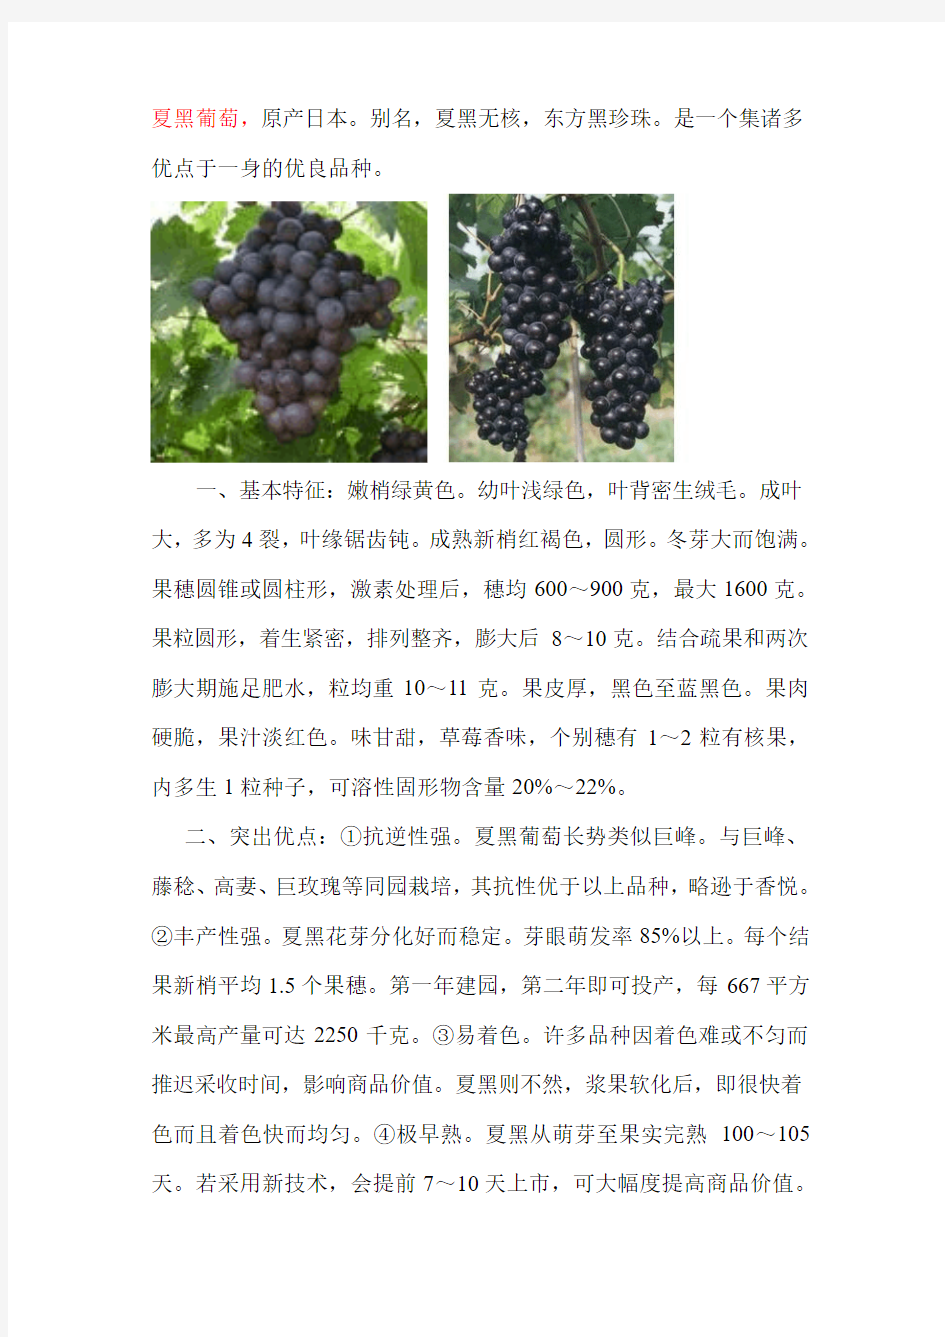 2011年葡萄新品种